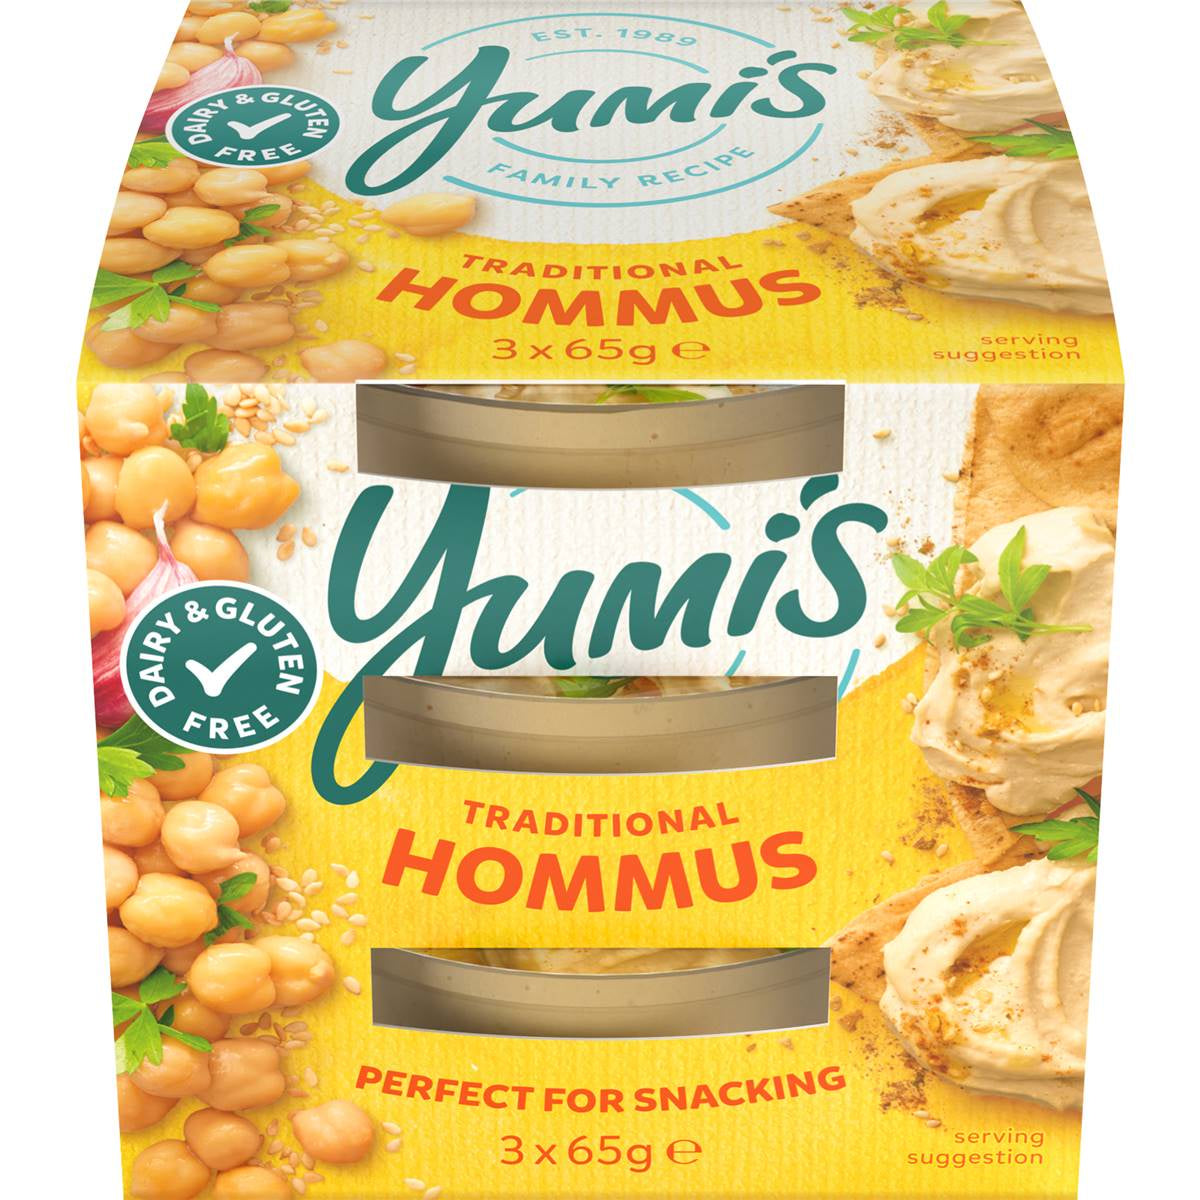 Yumis Traditional Hommus 3pk 65g